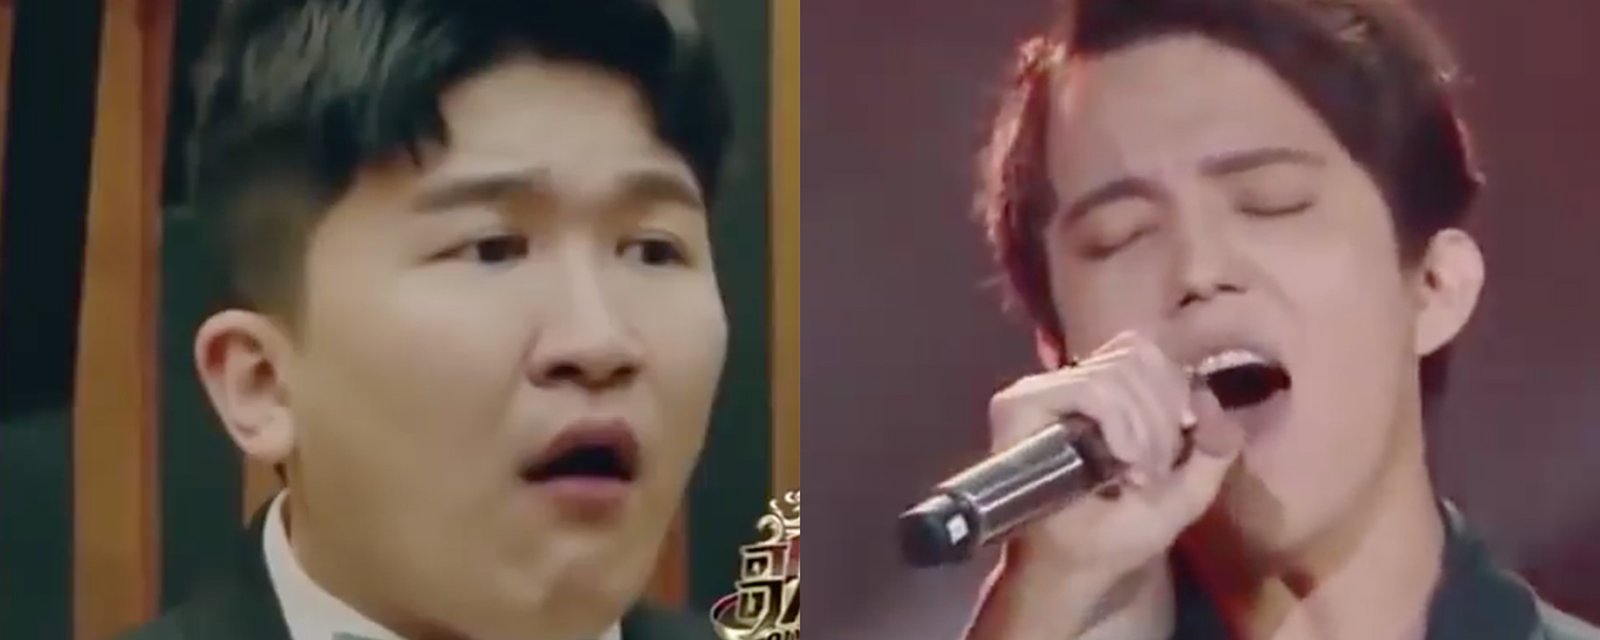 À La Voix en Chine, un candidat chante une chanson québécoise et devient une vedette mondiale!